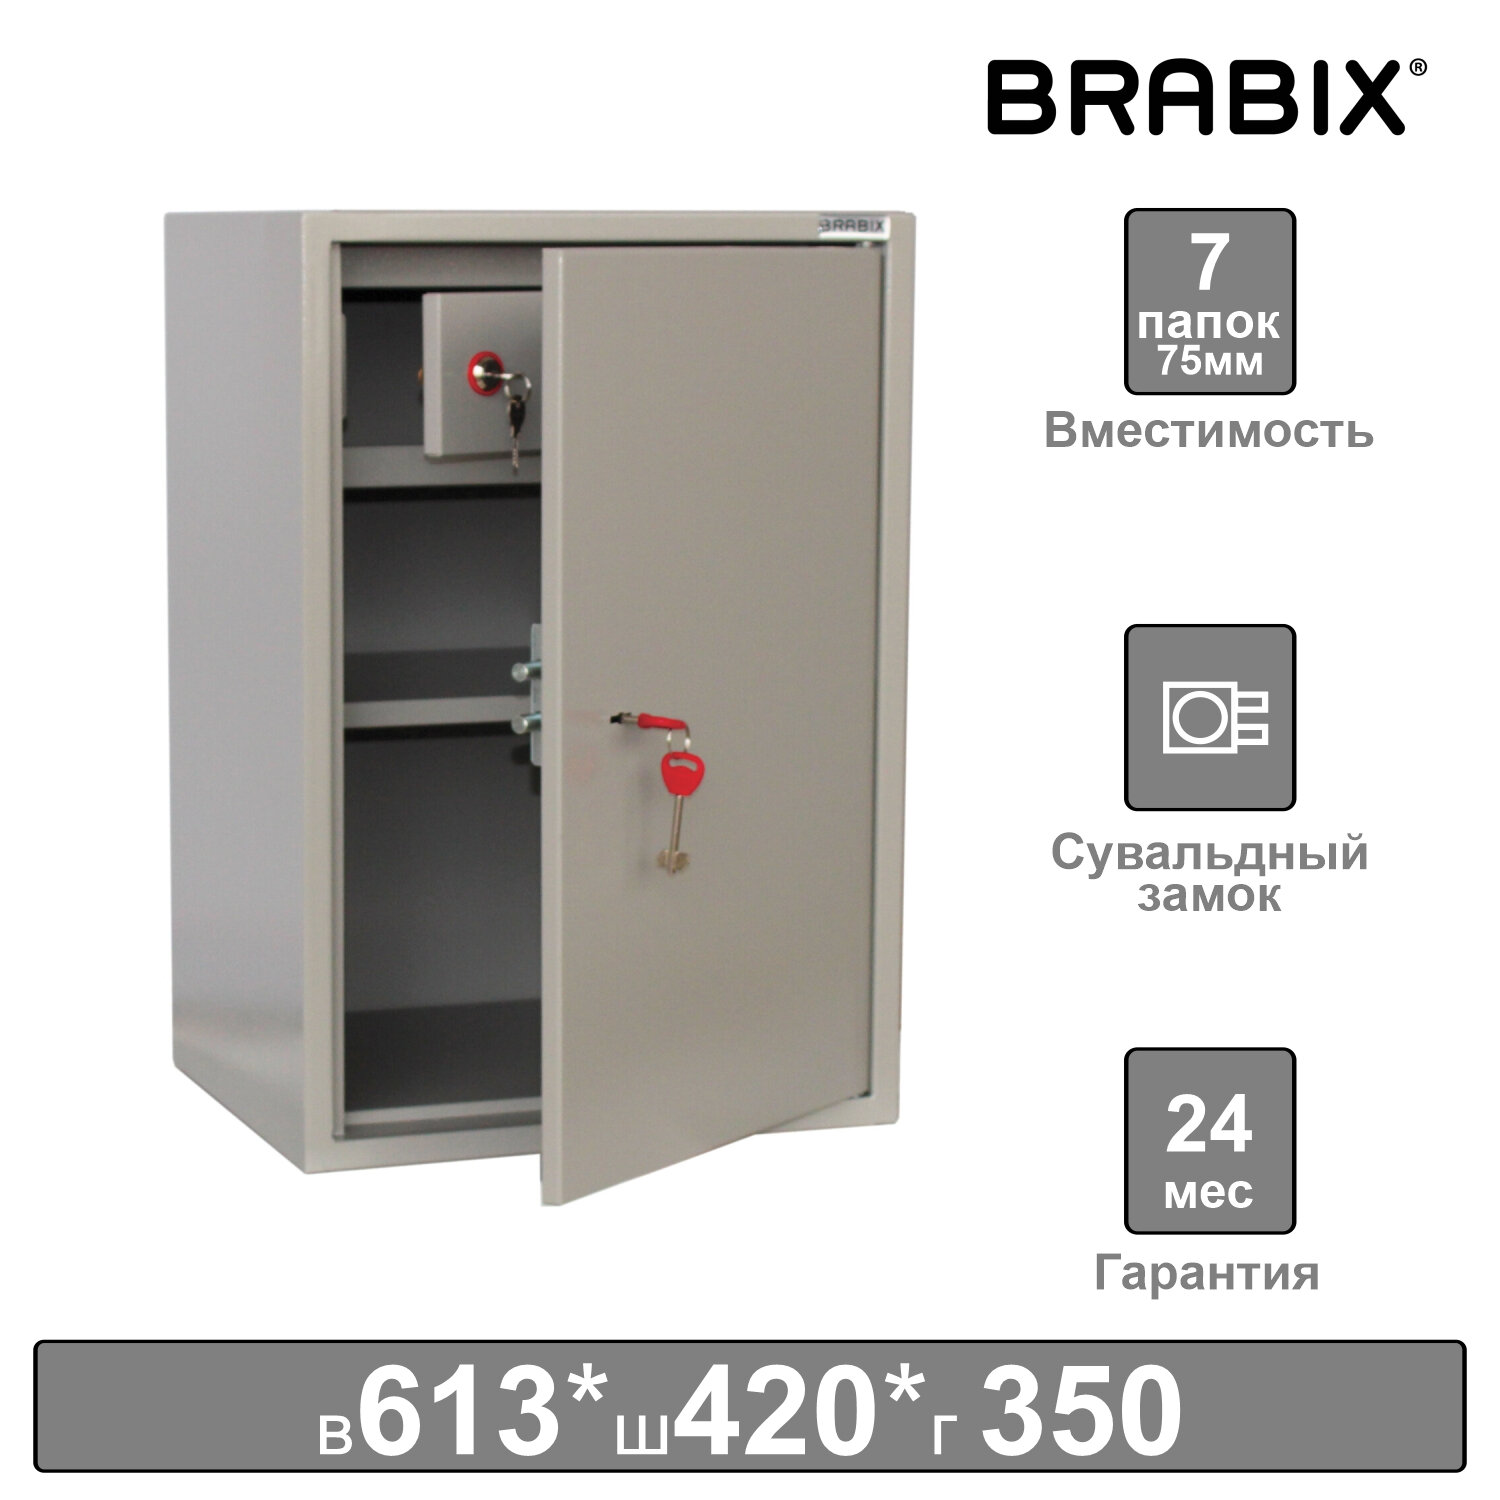 Brabix Шкаф металлический для документов BRABIX 291152 KBS-011Т, 613х420х350 мм, 15 кг, трейзер, сварной